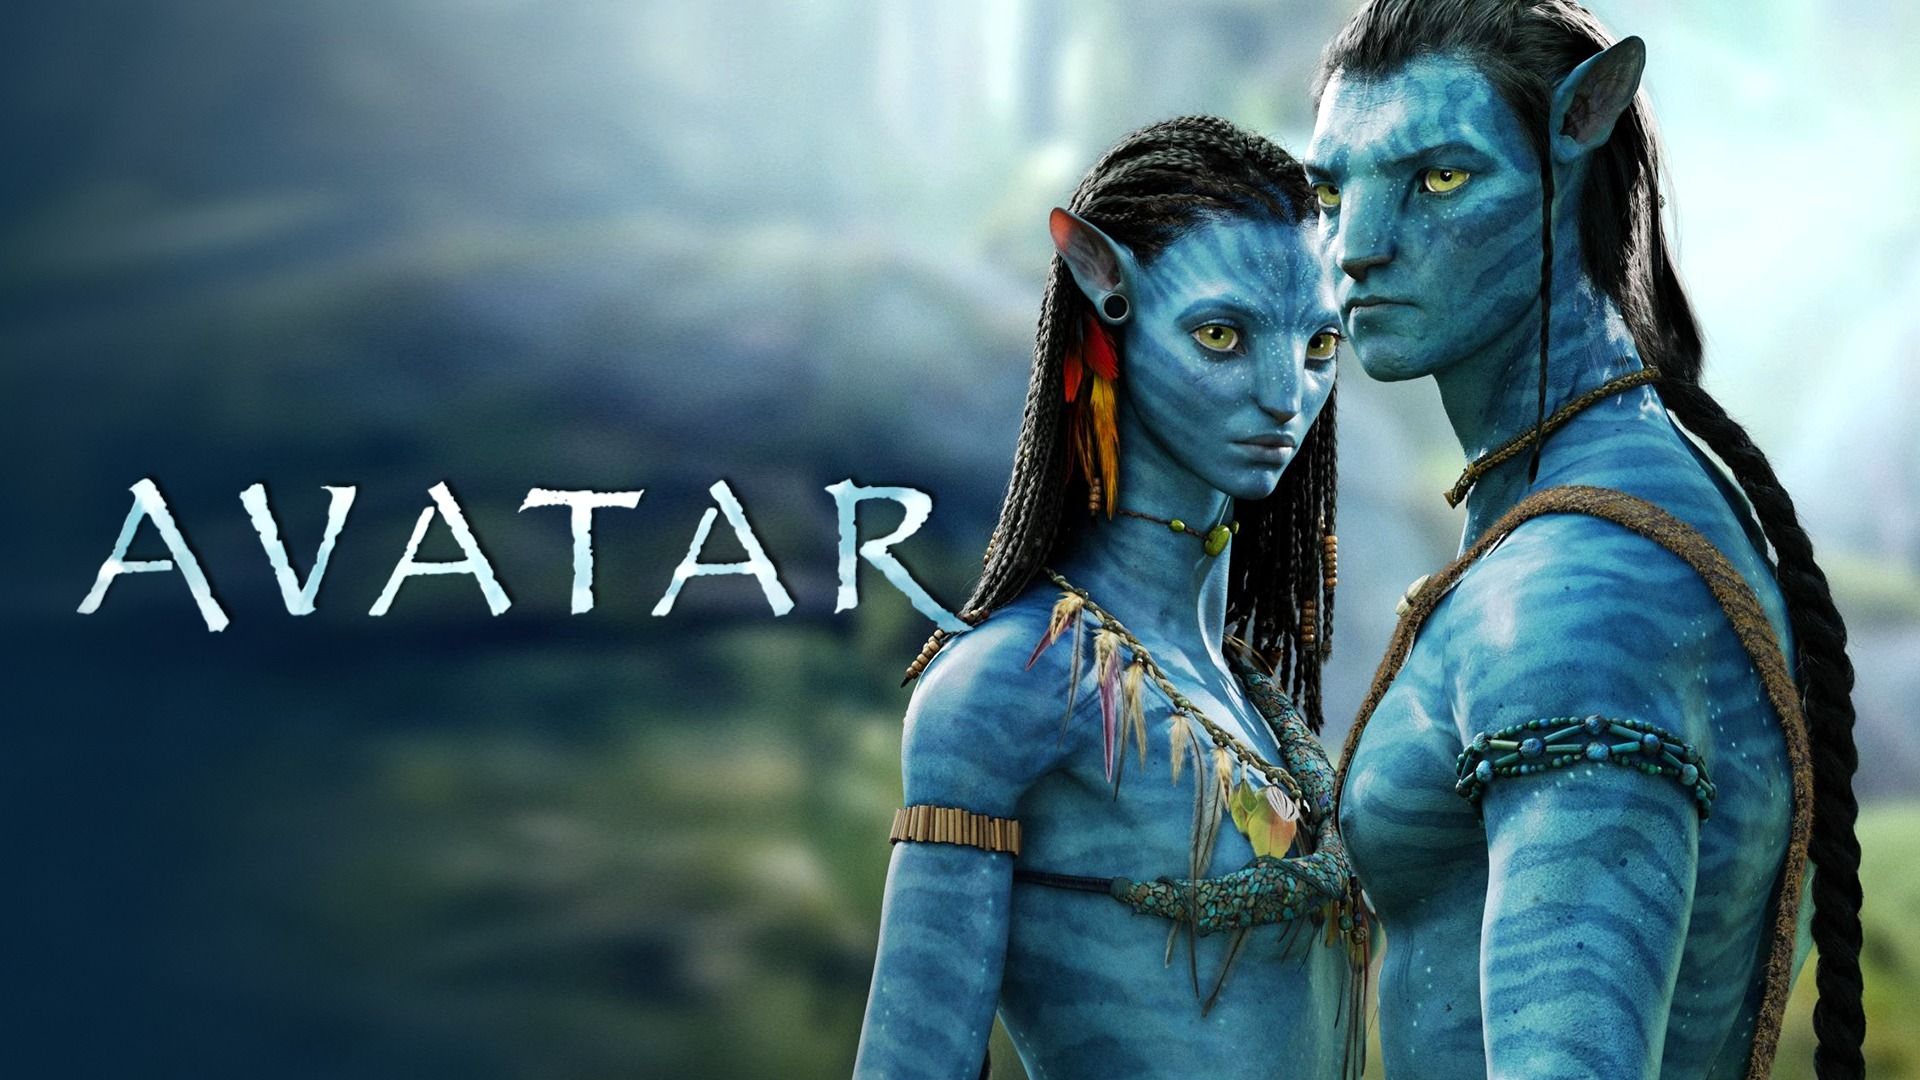 Avatar The Way of Water đạt doanh thu toàn cầu 138 tỉ USD Việt Nam hơn  220 tỉ đồng